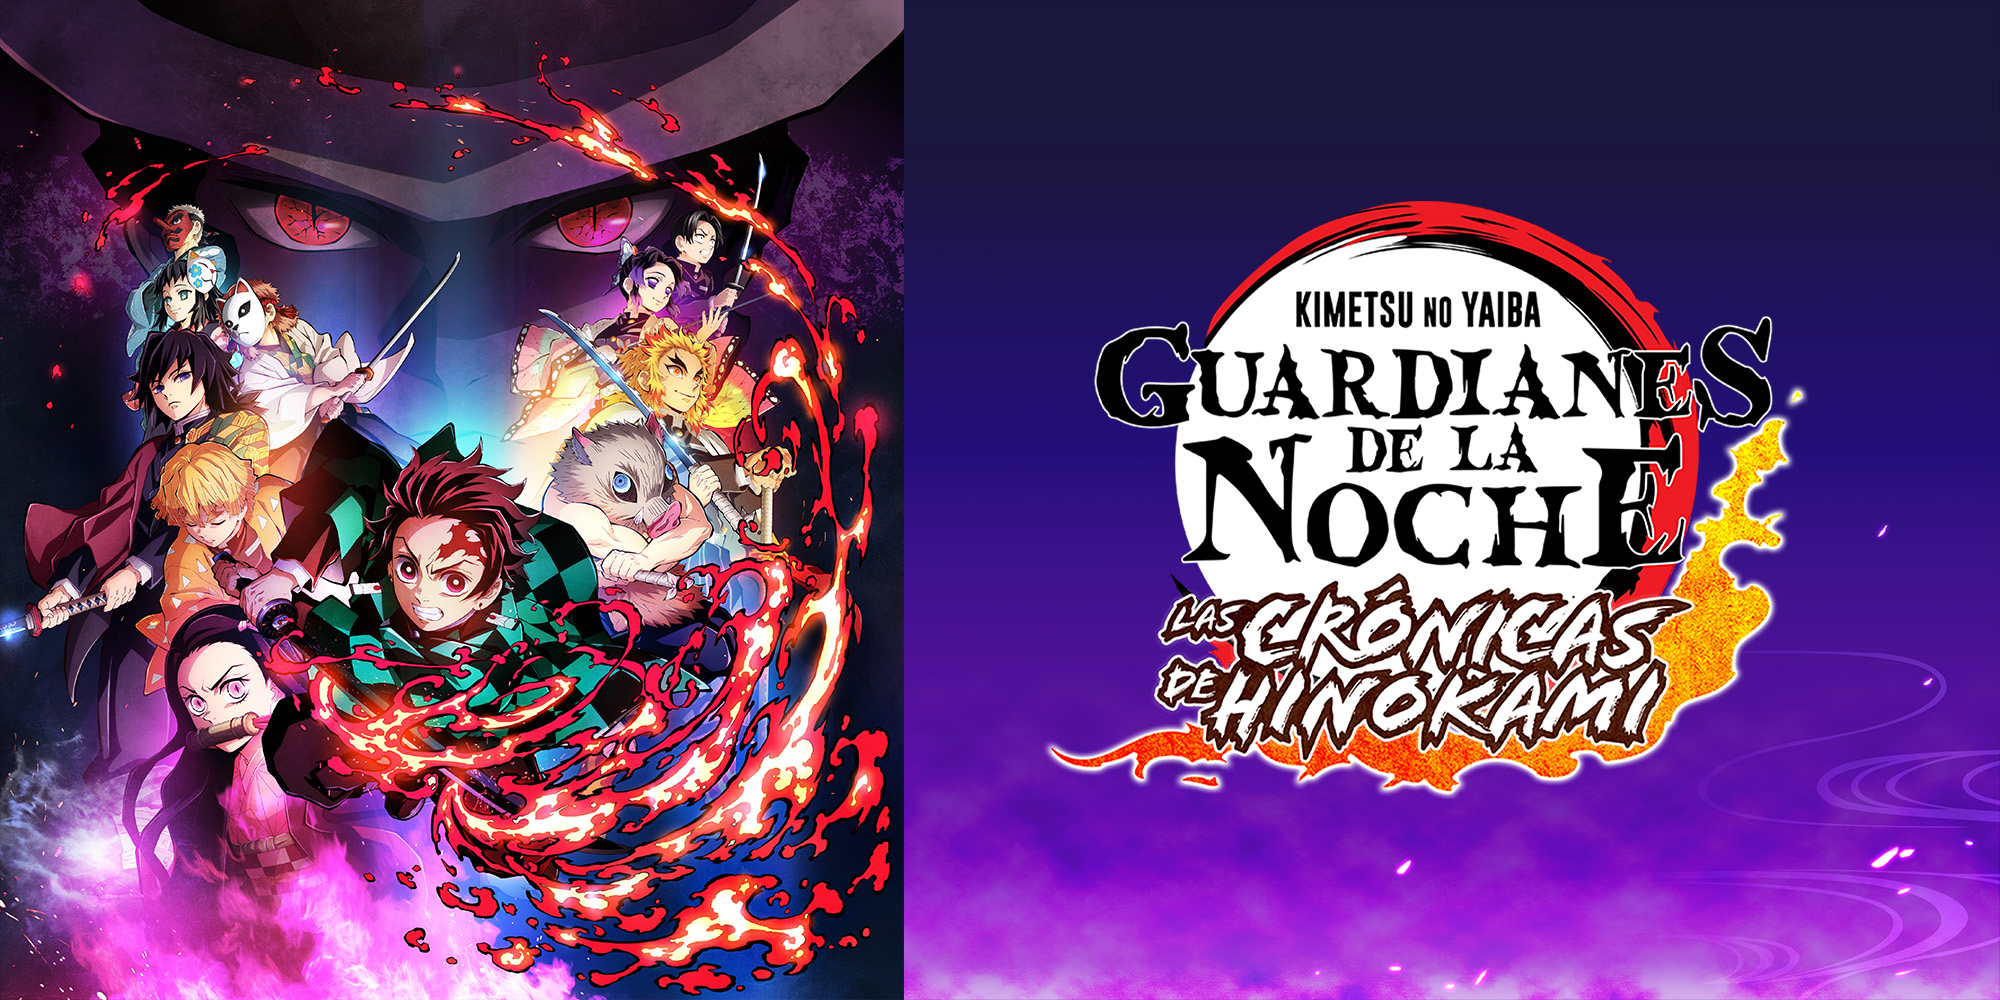 Guardianes de la Noche: Kimetsu no Yaiba en Español (Castellano) -  Crunchyroll